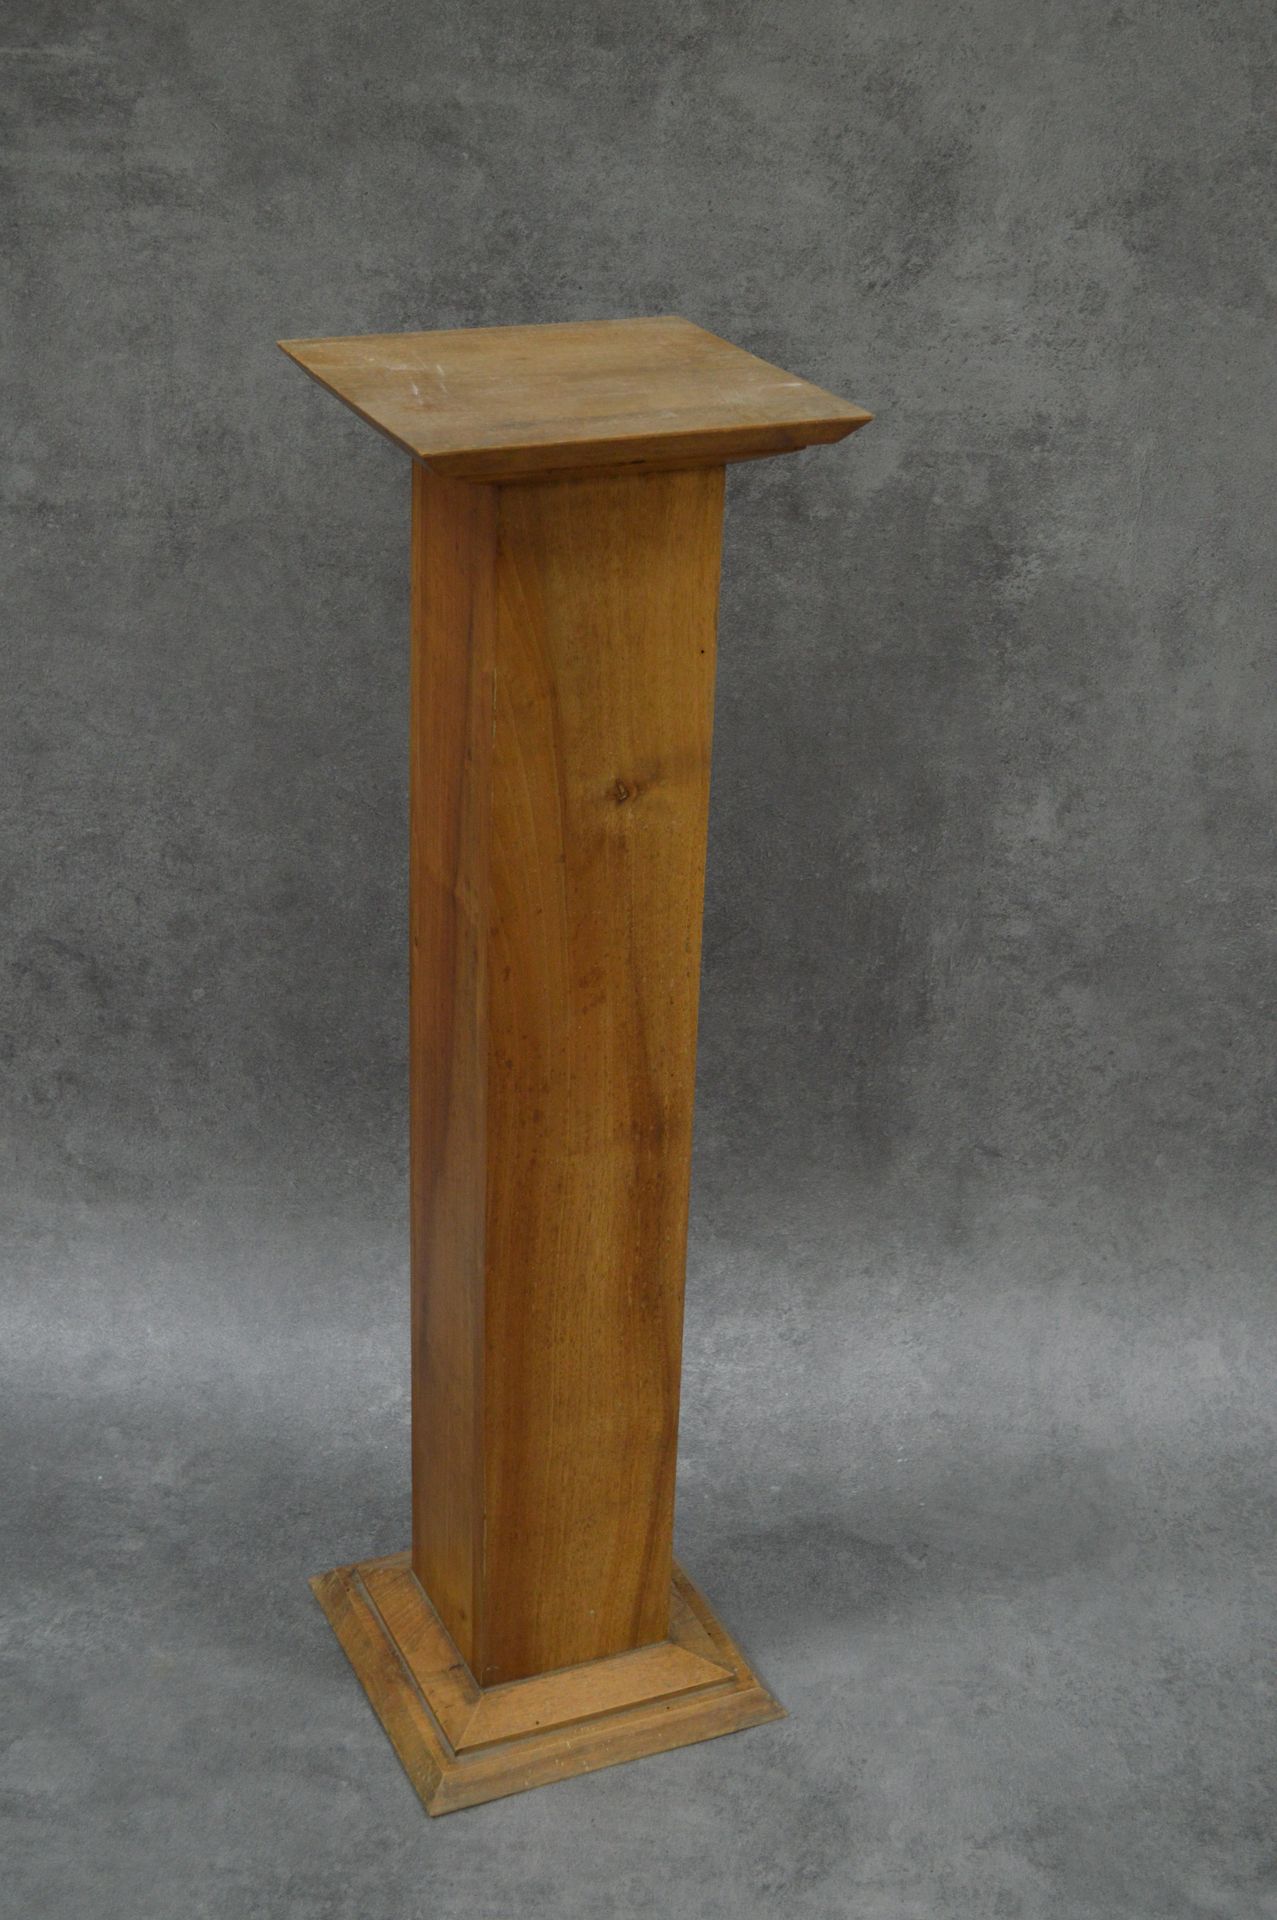 Pied de présentation 
Soporte de exhibición. De madera. Dimensiones : 28x28 cm. &hellip;